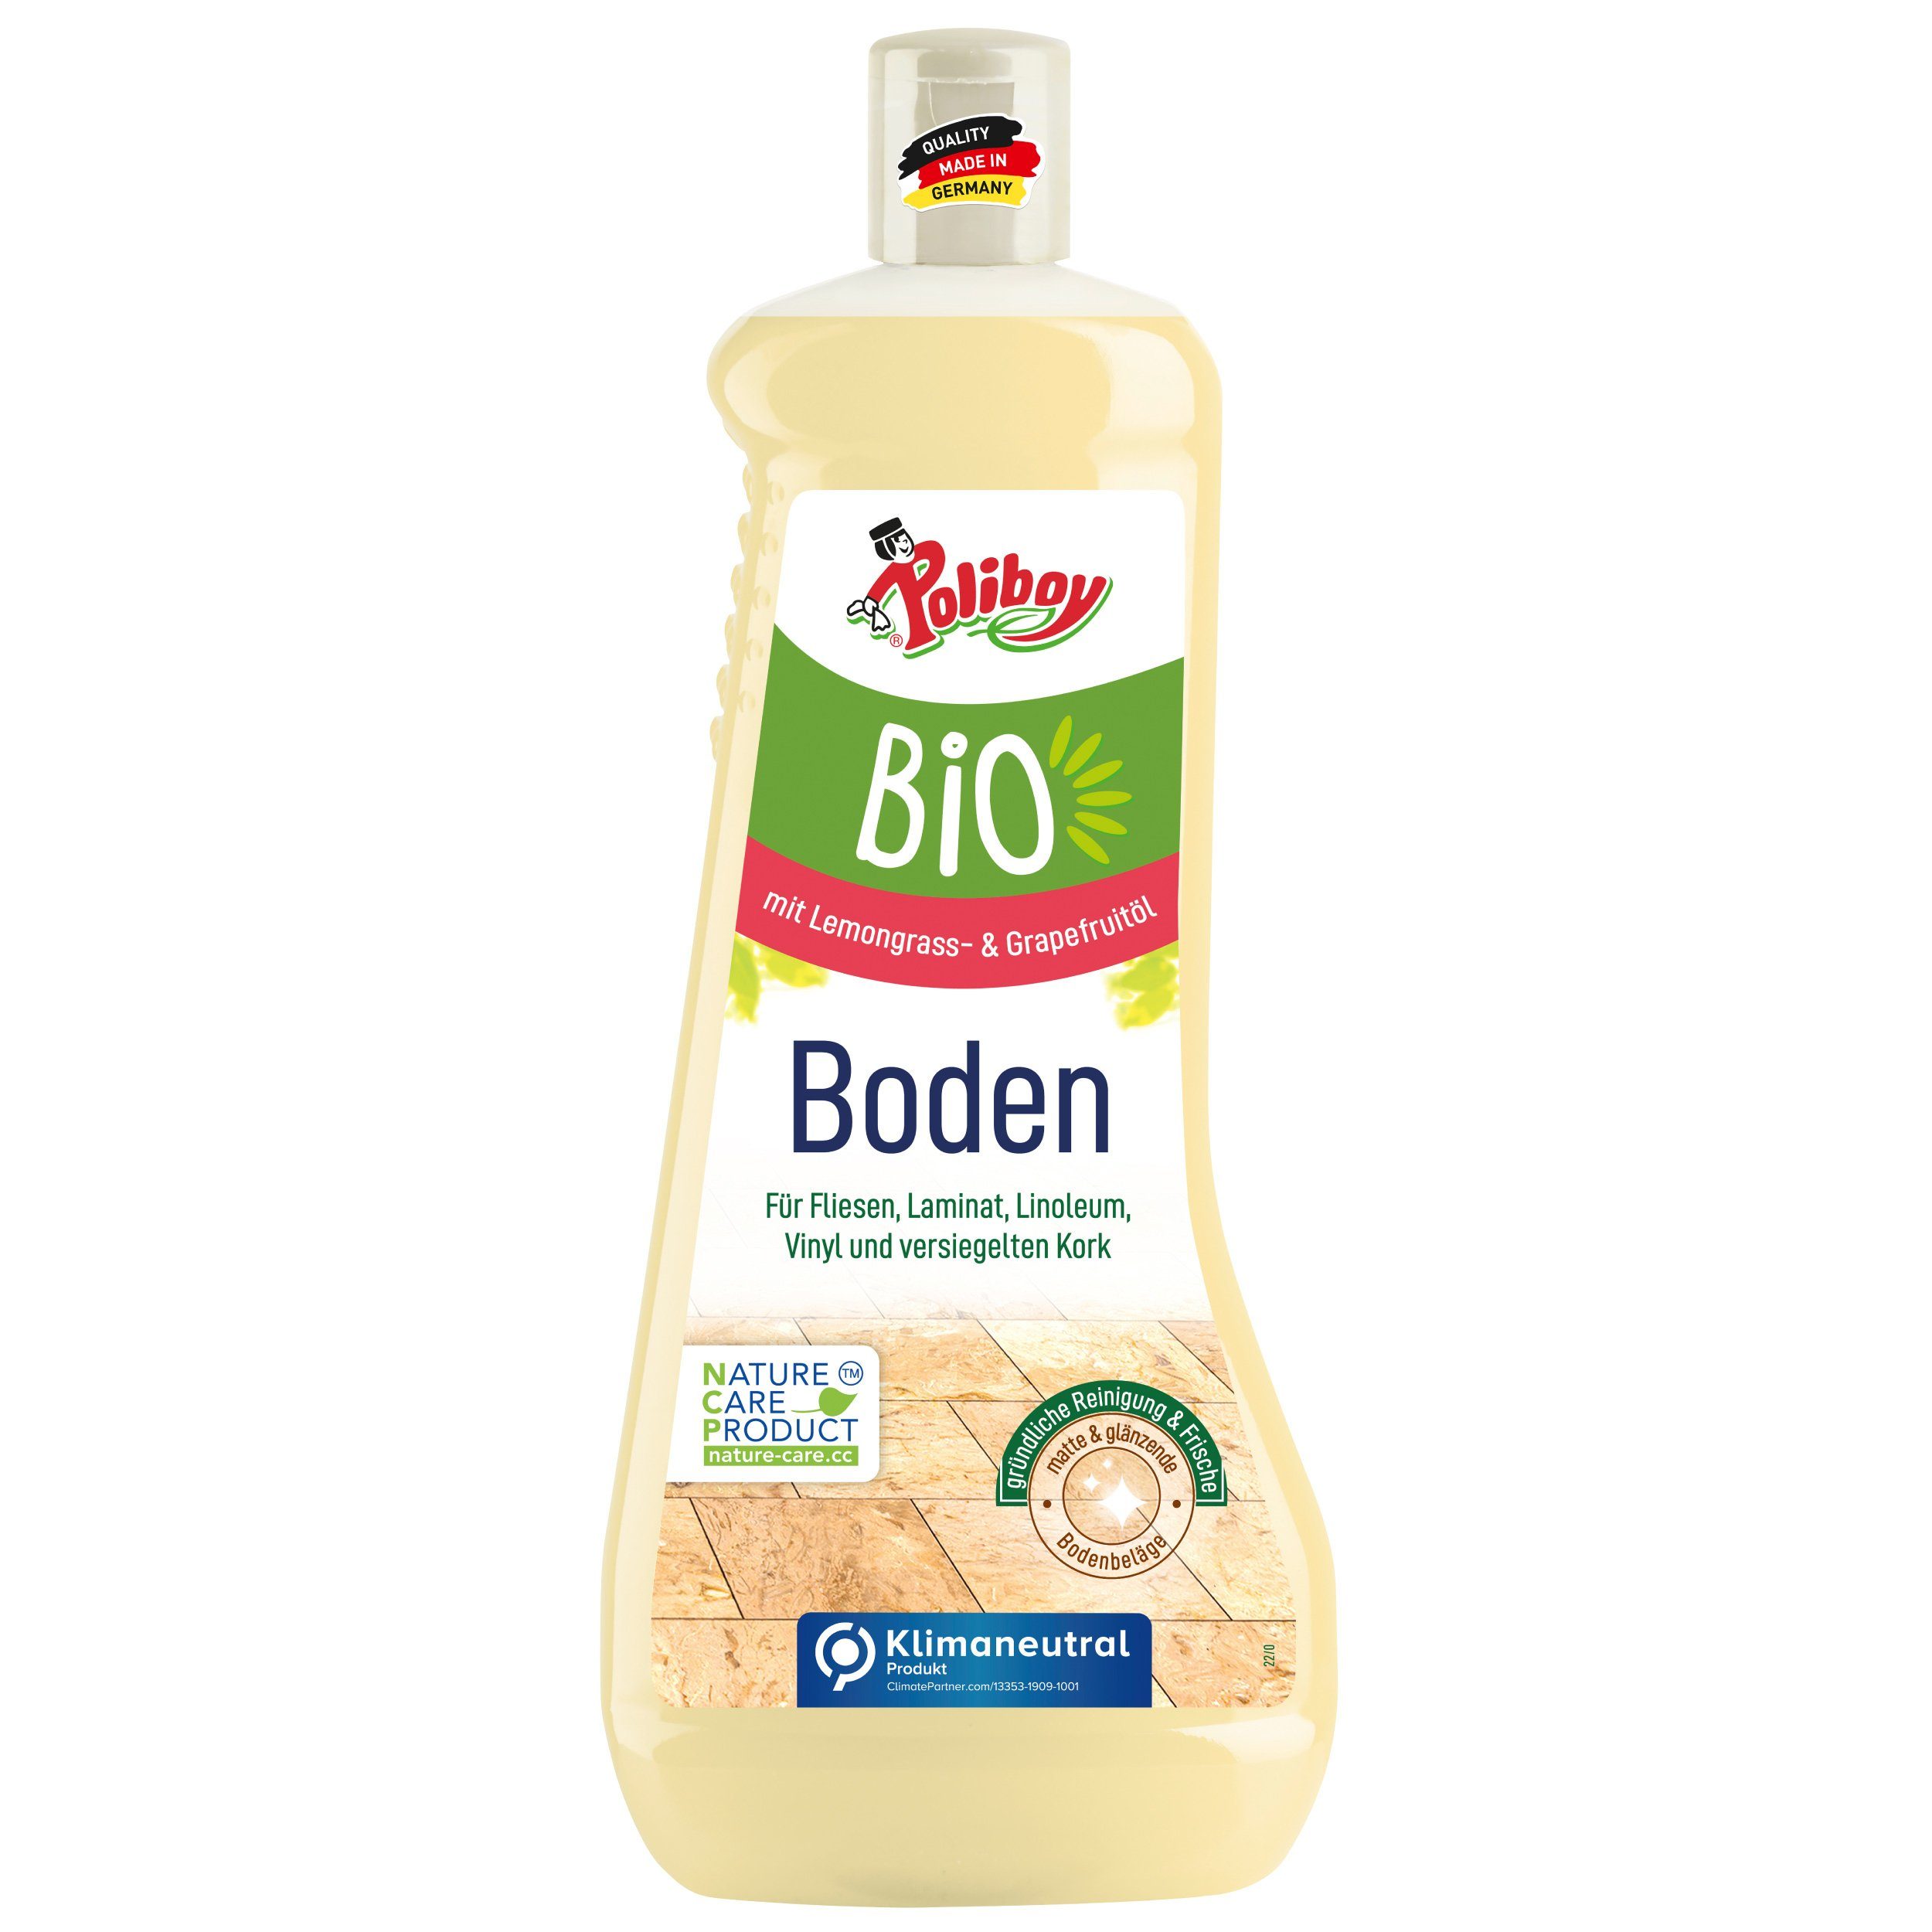 poliboy Bio Reiniger - 1 Liter - Fussbodenreiniger (zur Reinigung aller Fliesen- und Laminatböden - Made in Germany)